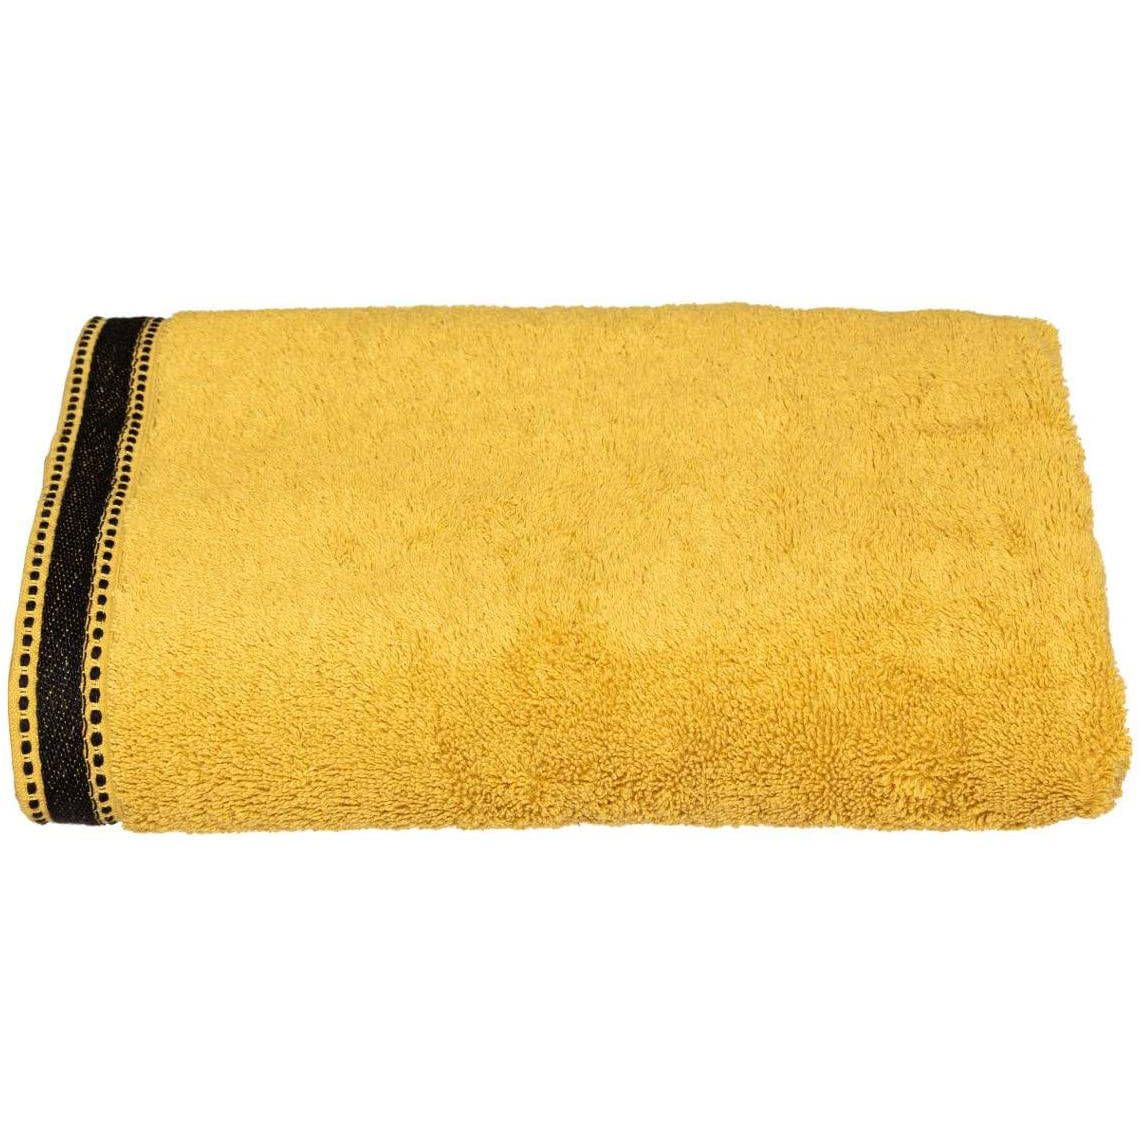 Atmosphera Bavlněný ručník do koupelny JOIA, 70 x 130 cm, žlutá barva - EMAKO.CZ s.r.o.